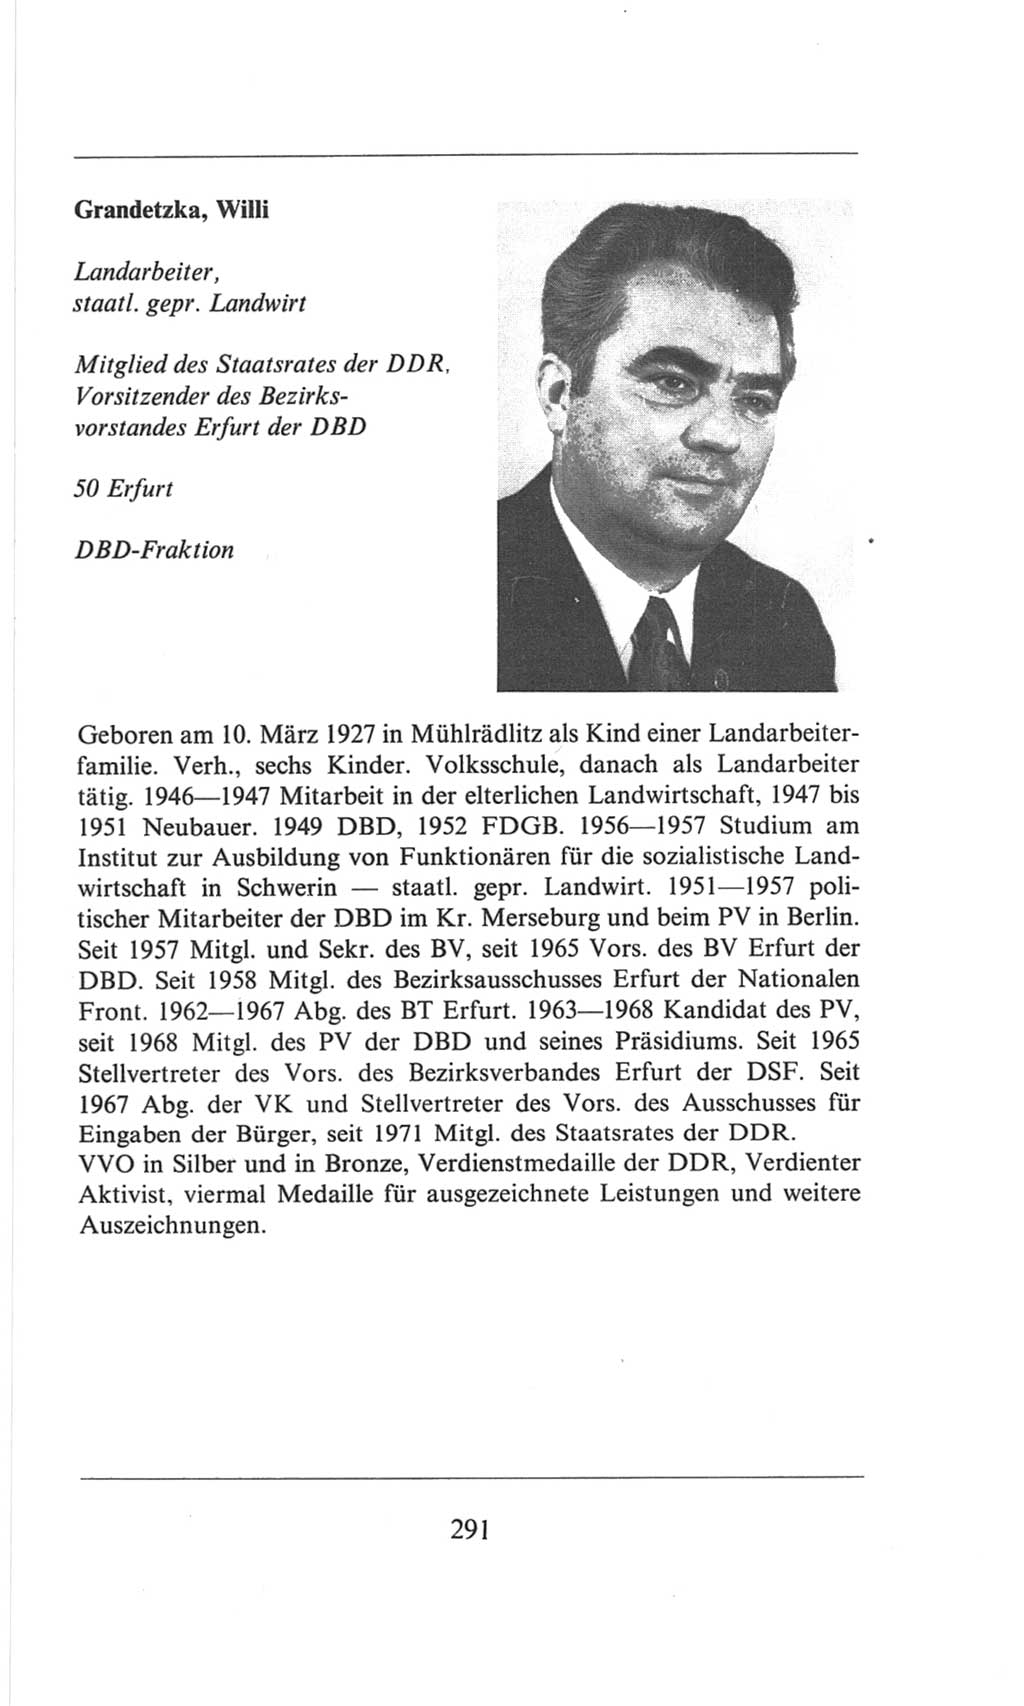 Volkskammer (VK) der Deutschen Demokratischen Republik (DDR), 6. Wahlperiode 1971-1976, Seite 291 (VK. DDR 6. WP. 1971-1976, S. 291)